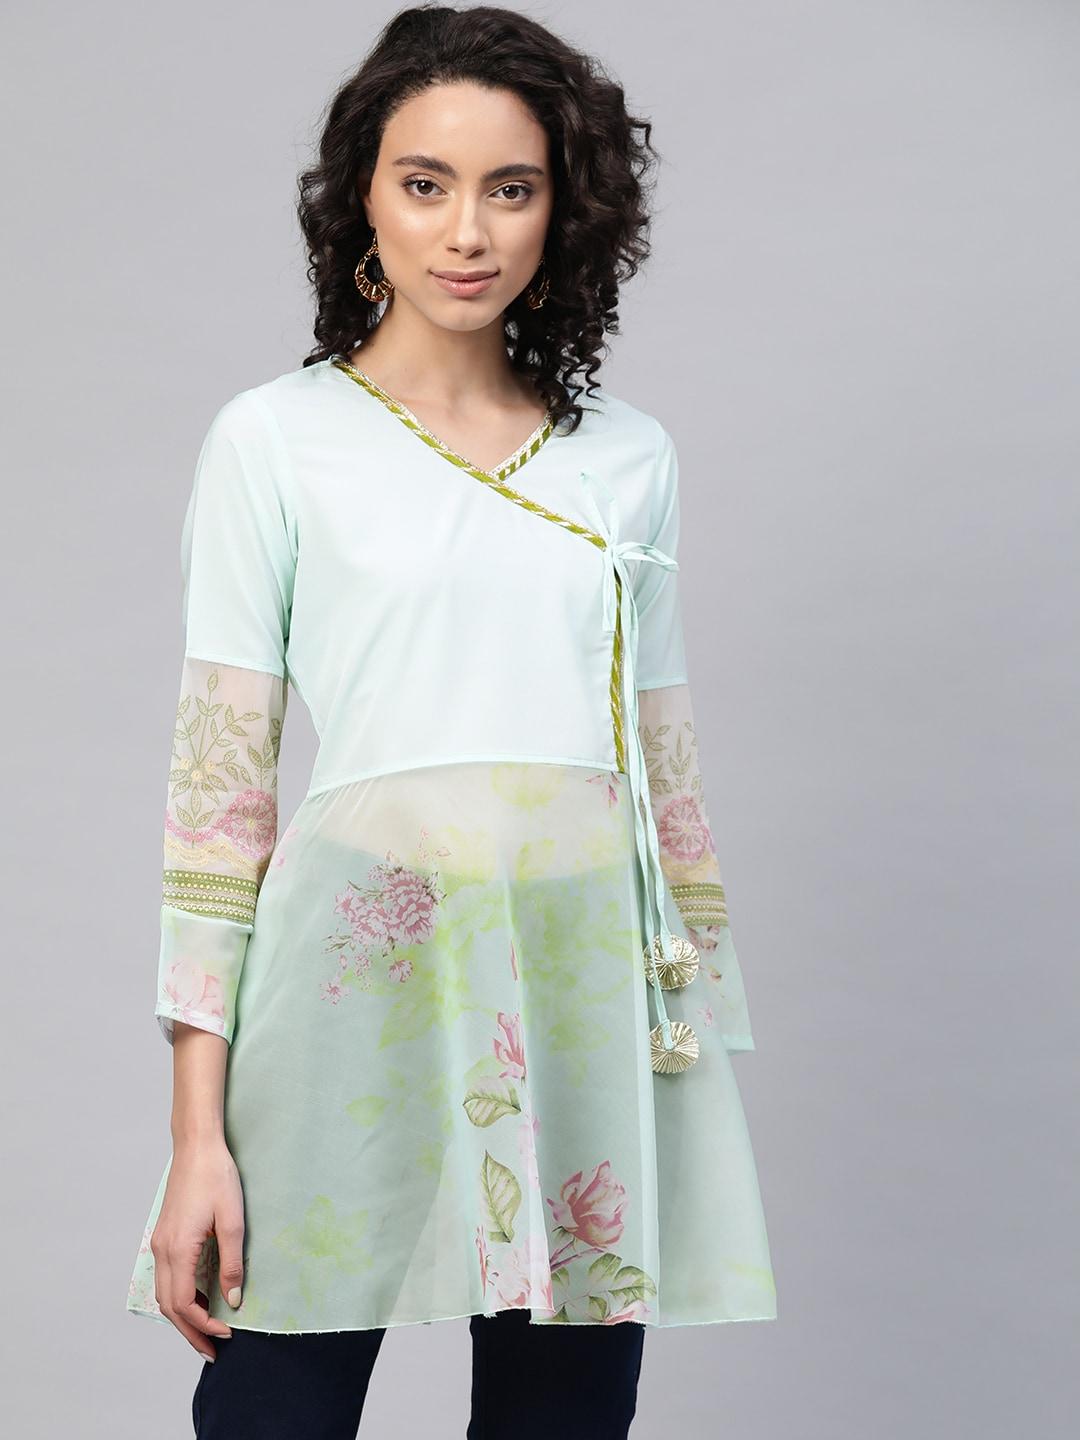 Ahalyaa Women Sea Green & Pink Floral Print Semi-Sheer Angrakha Tunic